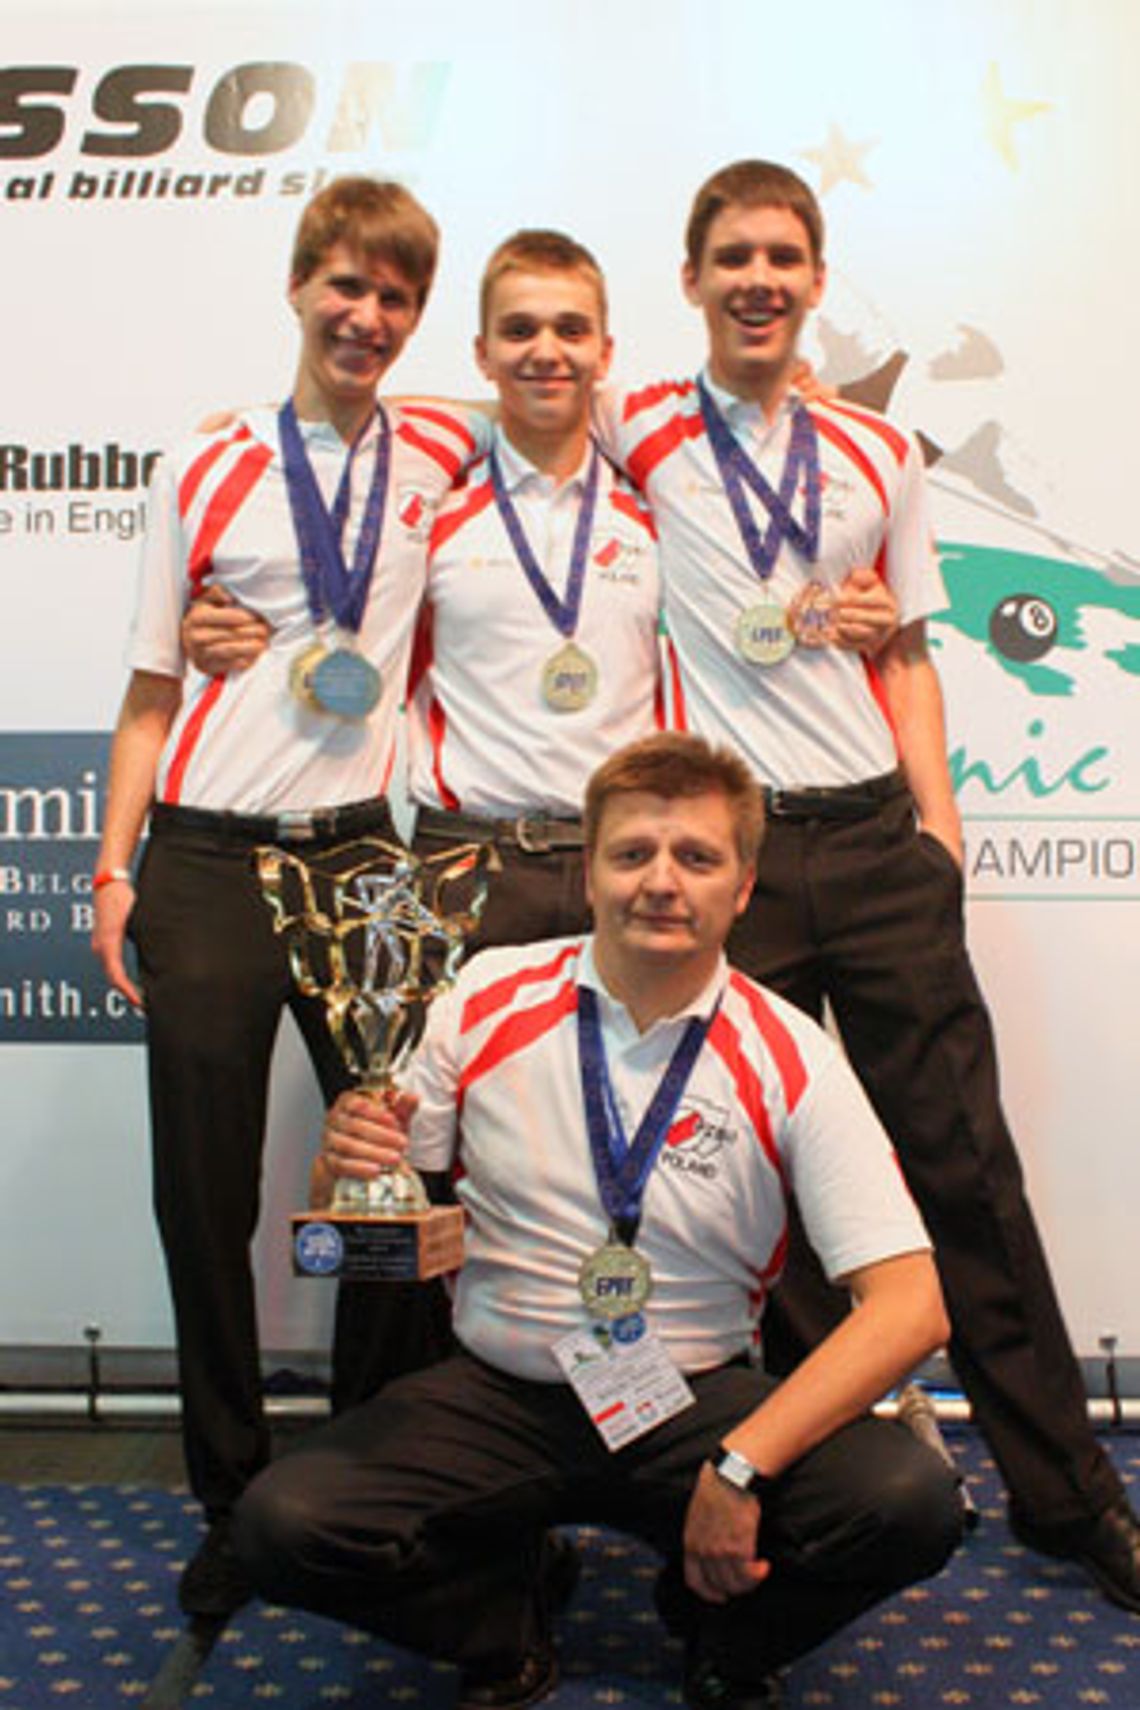 Mistrzostwa Świata Juniorów i Osób na Wózkach Inwalidzkich w Pool Bilard 9 bil - Kielce 2011